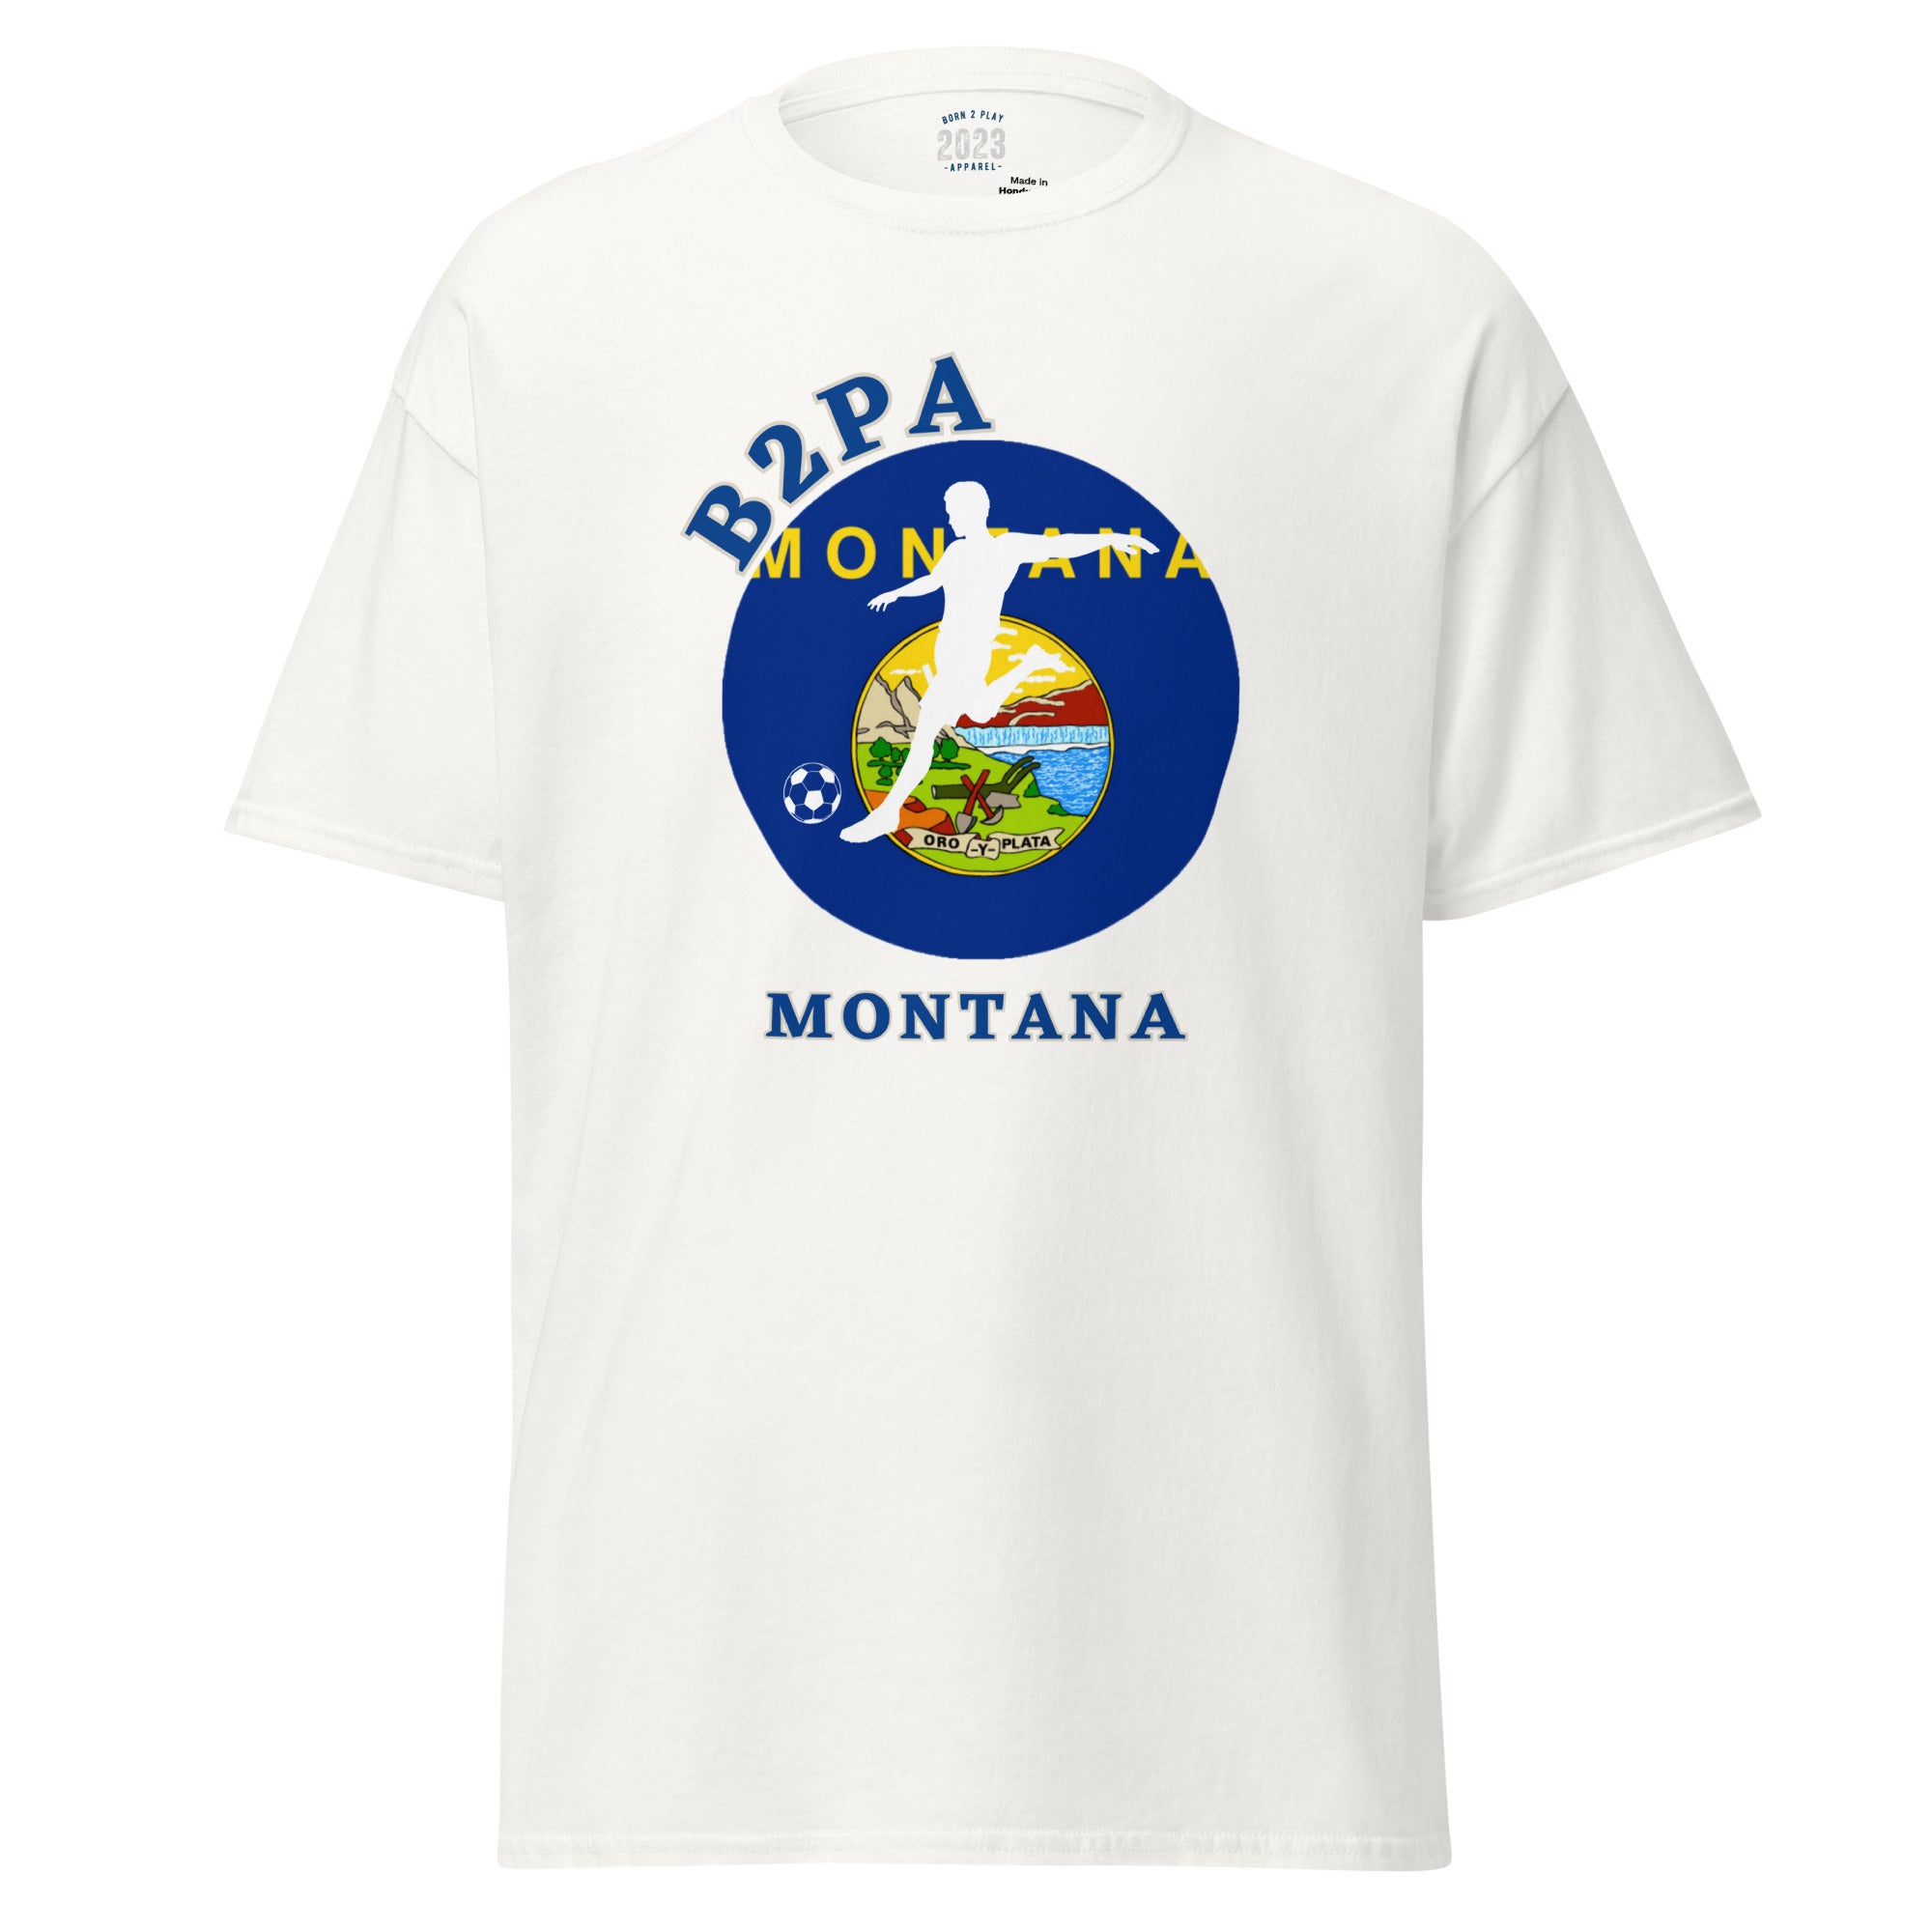 Montana Bends it Better